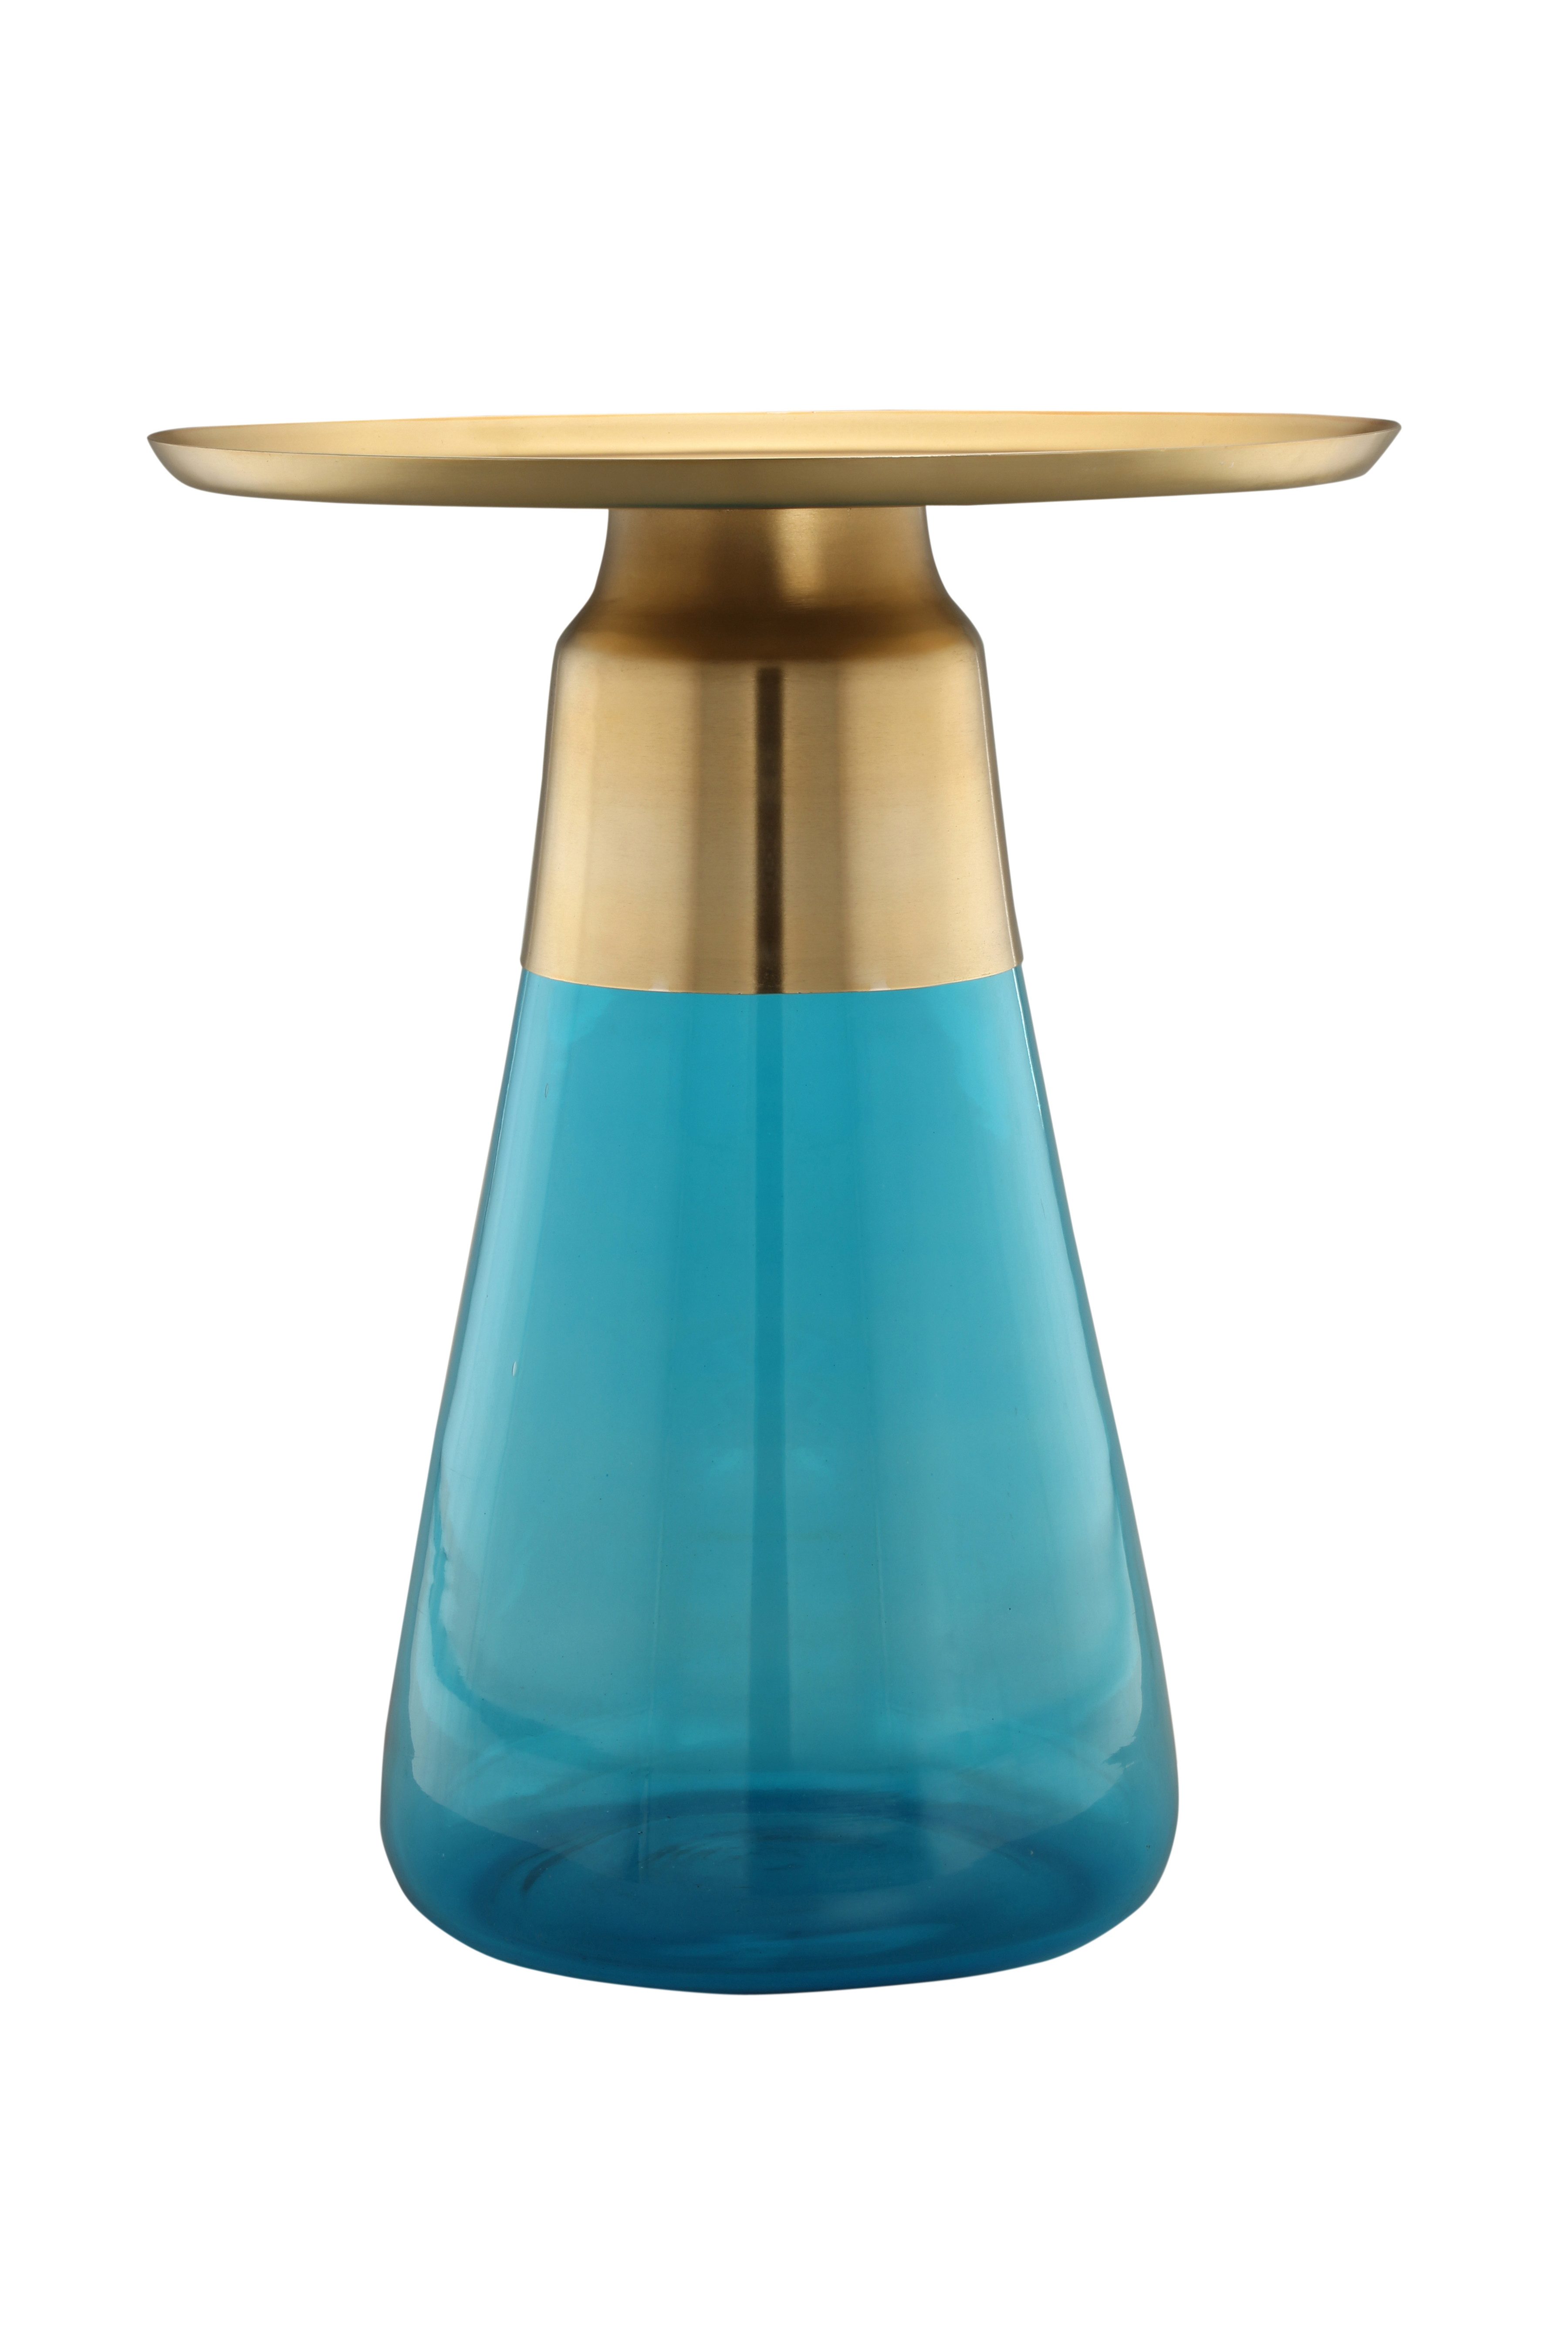 Qiyano Beistelltisch Oliana Sofatisch Blau - Modern, handgefertigtes Glas, Stahl